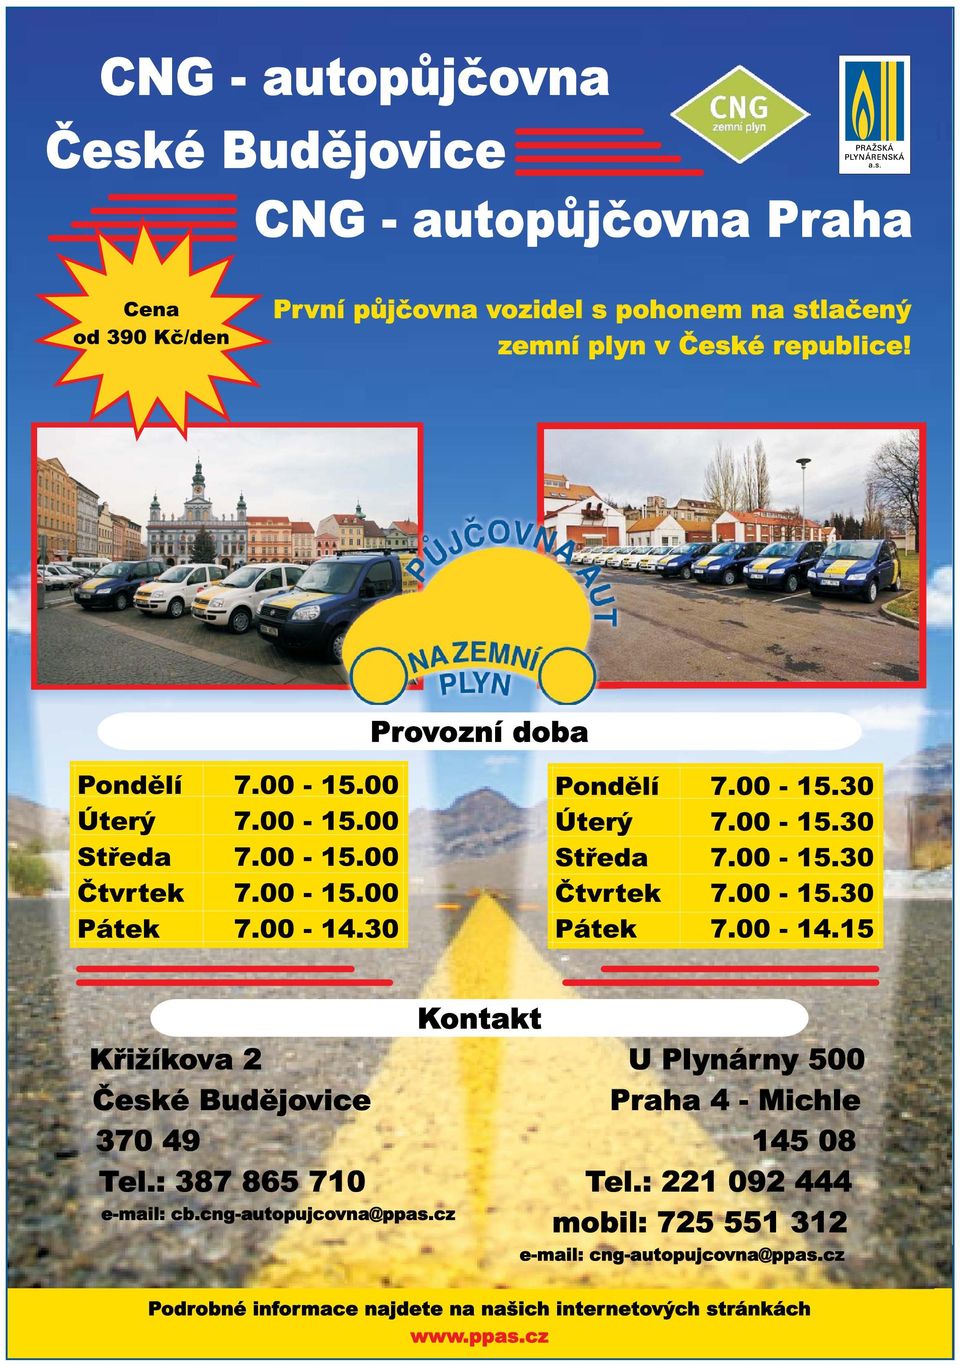 cng-autopujcovna@ppas.cz Kontakt U Plynárny 500 Praha 4 - Michle 145 08 Tel.